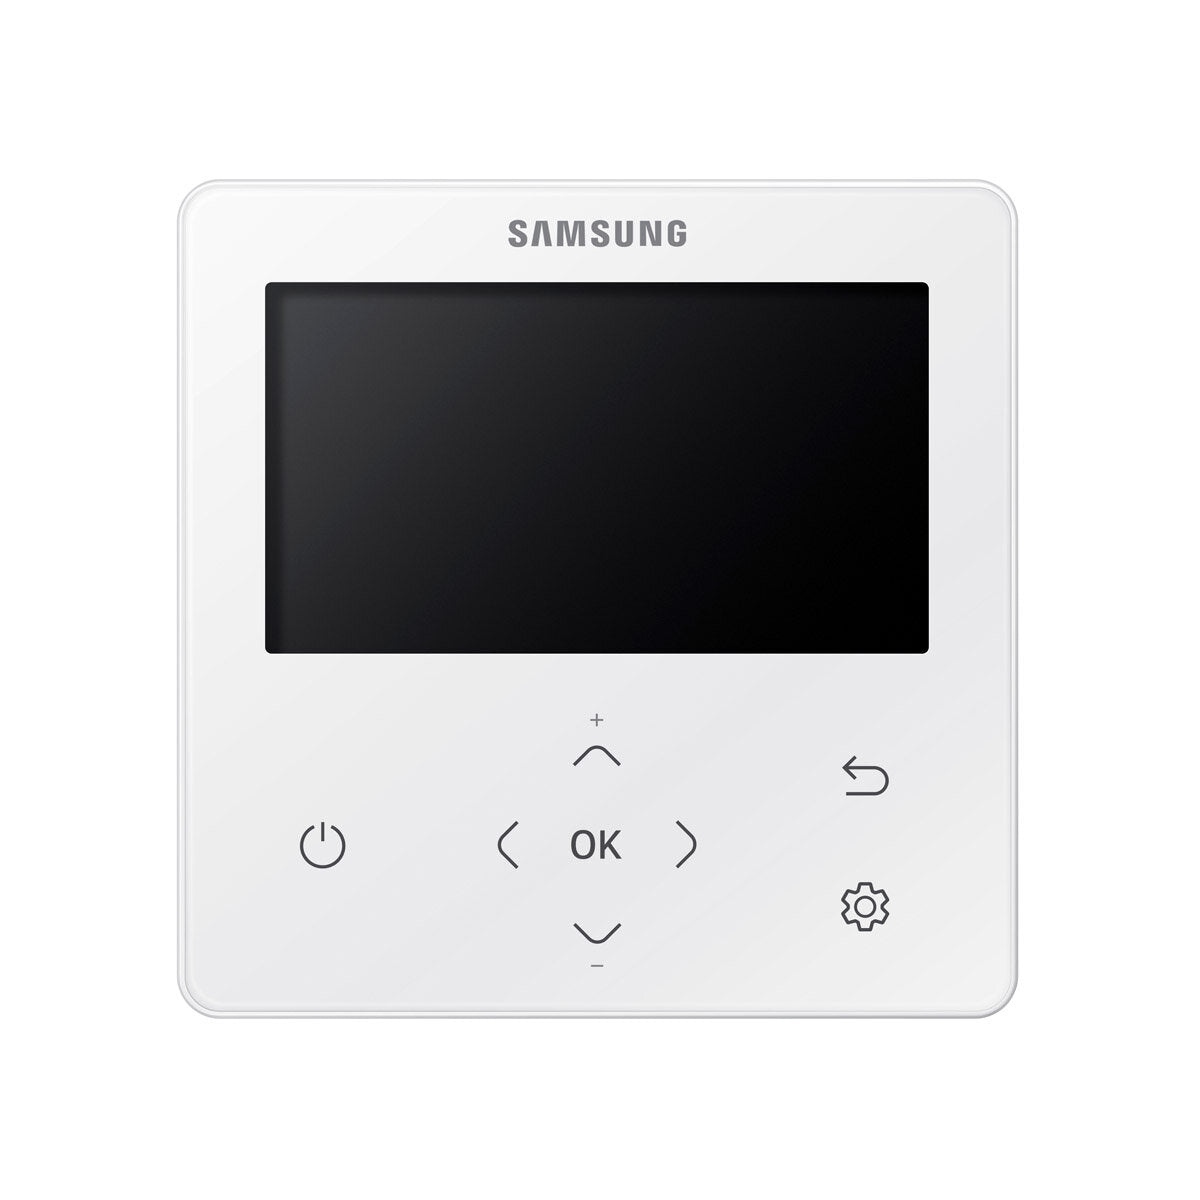 Samsung Klimaanlage Windfree 4-fach Pentasplit 7000 + 9000 + 12000 + 12000 + 12000 BTU Inverter A++ Außengerät 10,0 kW